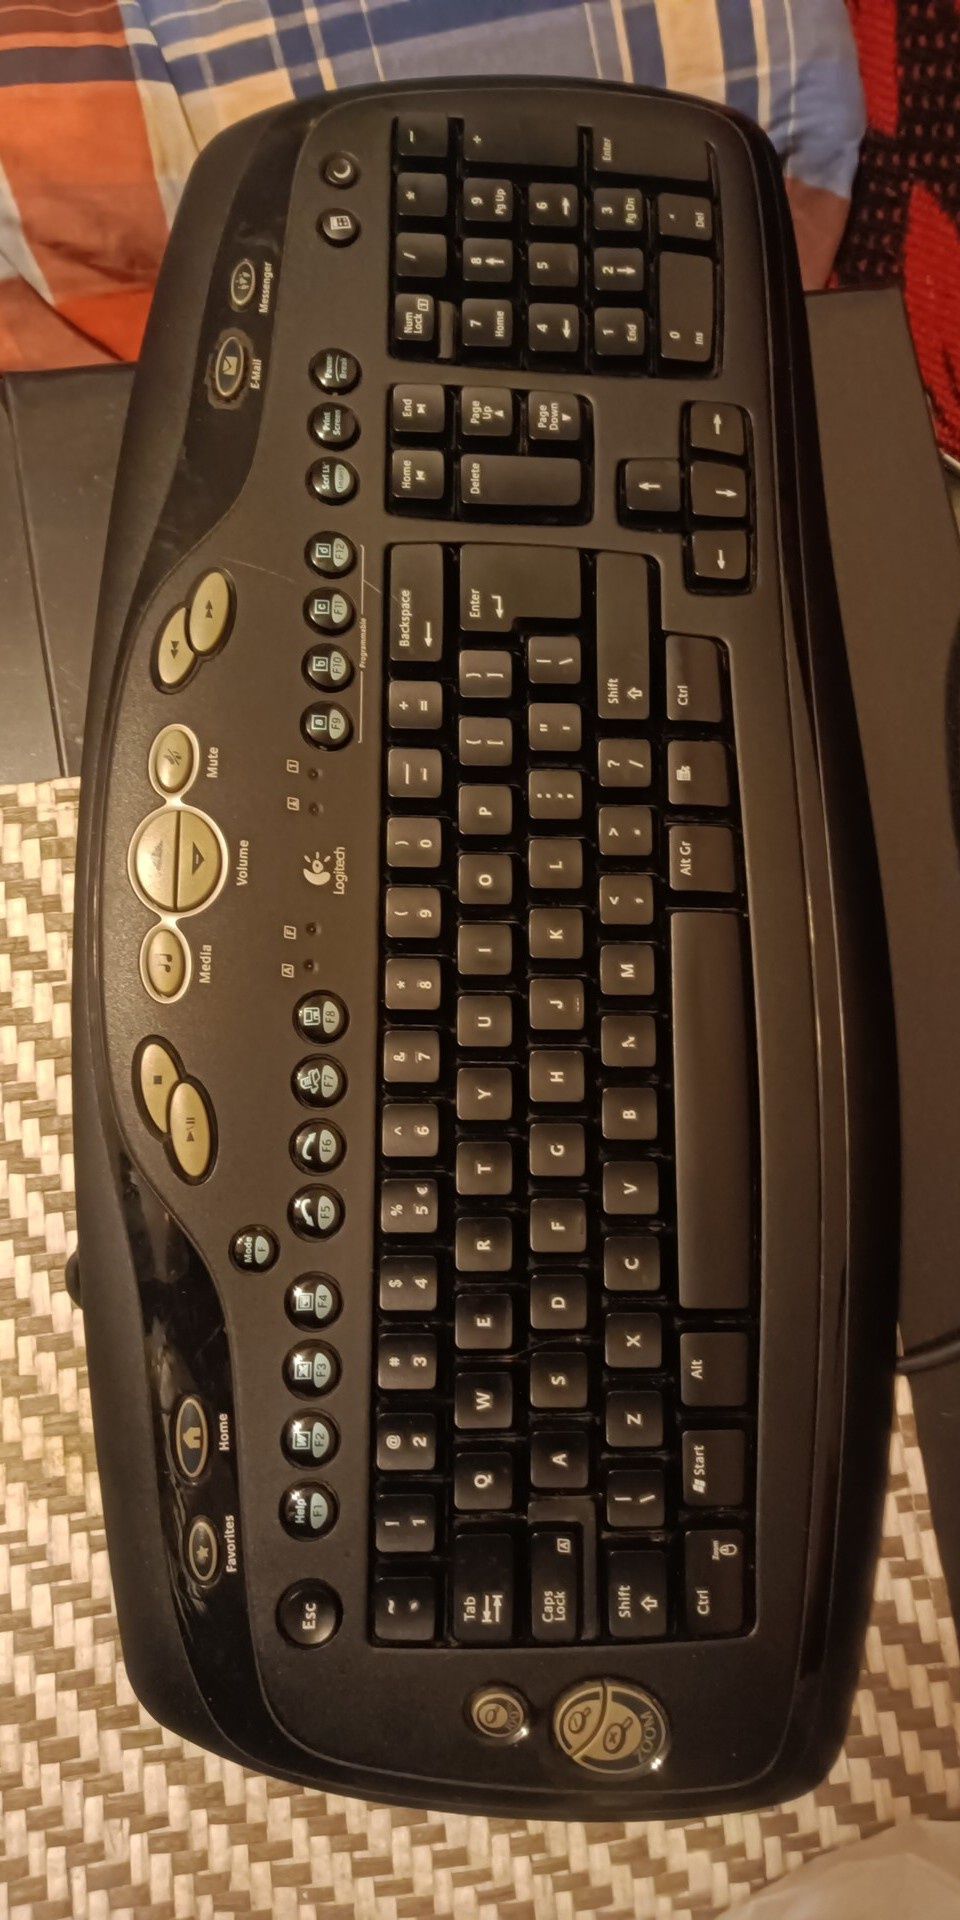 Monitor z klawiaturą Zamienię